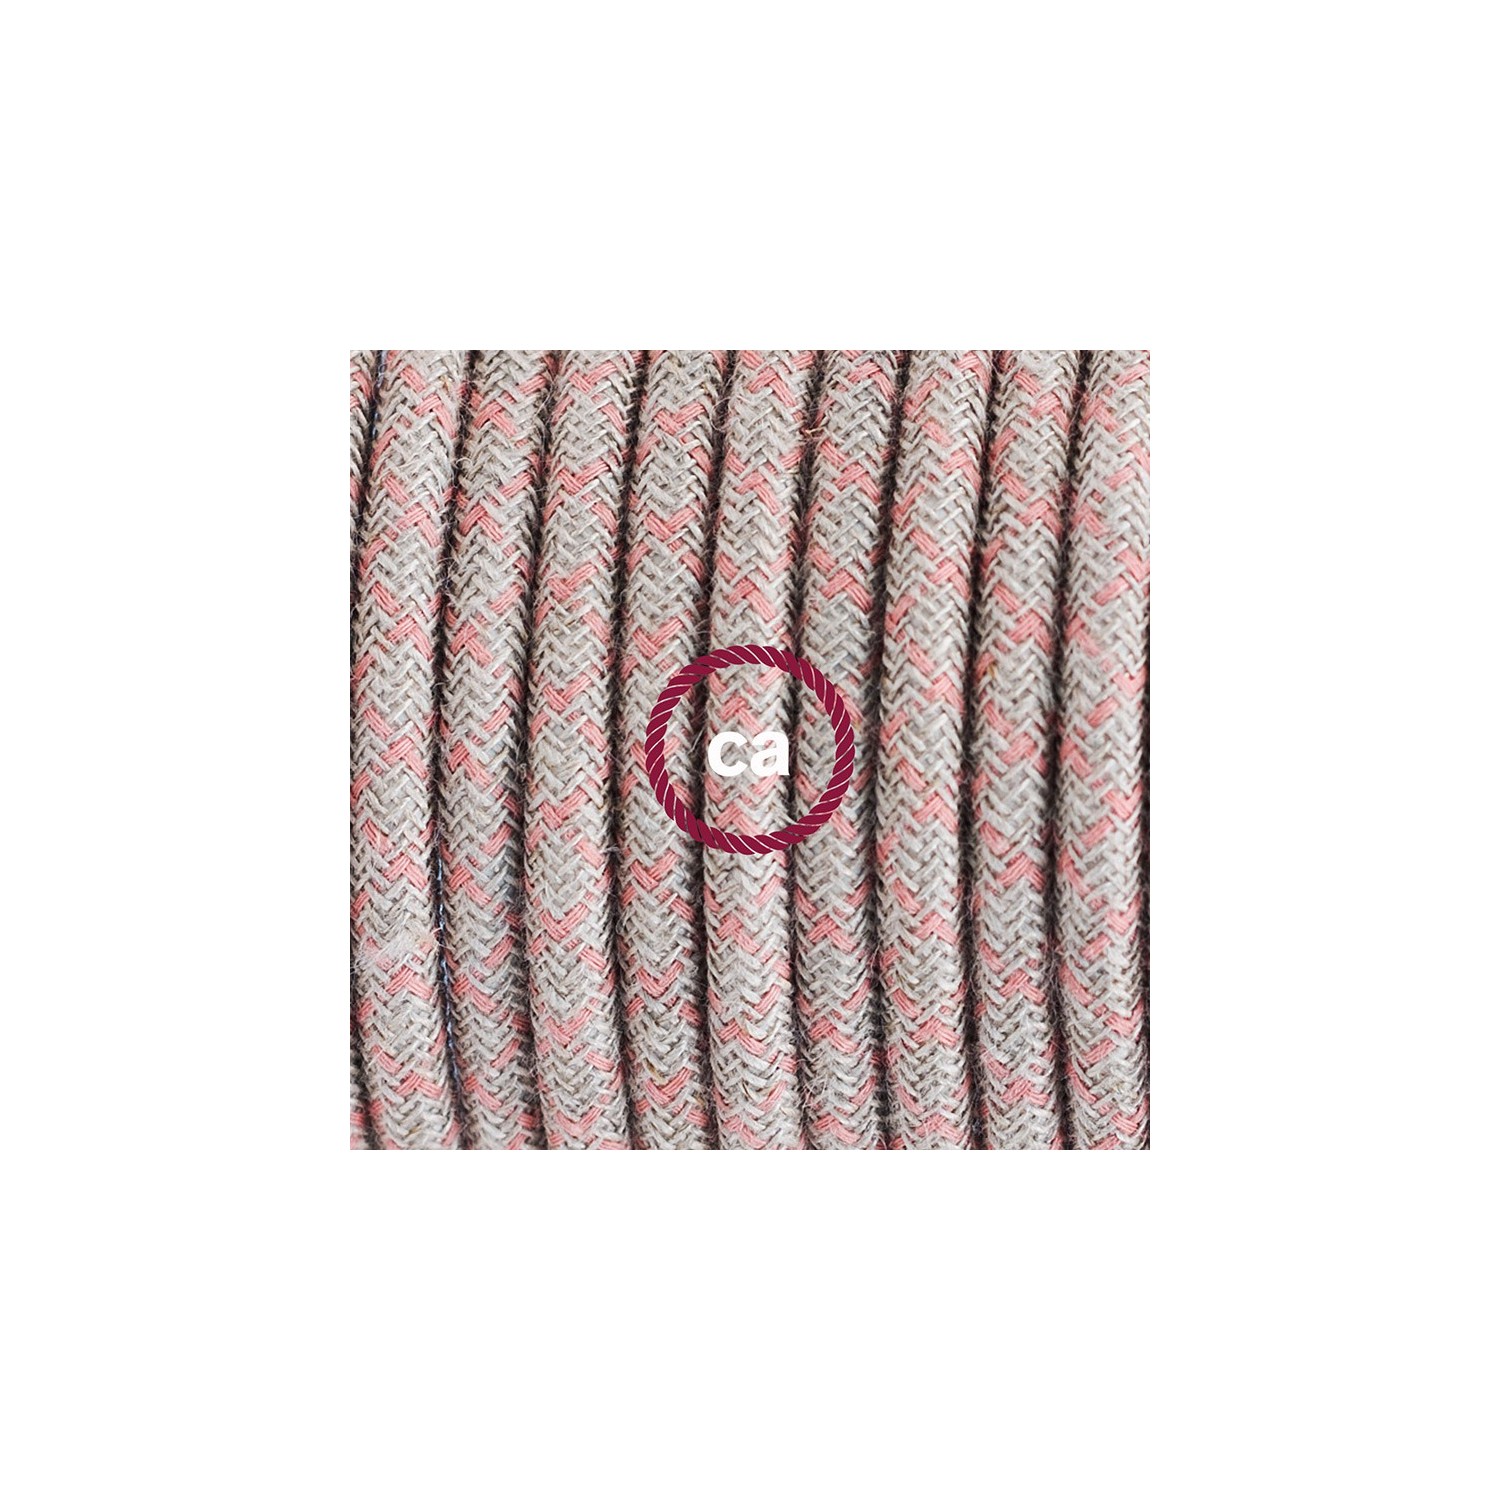 Strijkijzersnoer set RD61 oud roze diamant katoen en natuurlijk linnen 3 m. voor staande lamp met stekker en voetschakelaar.